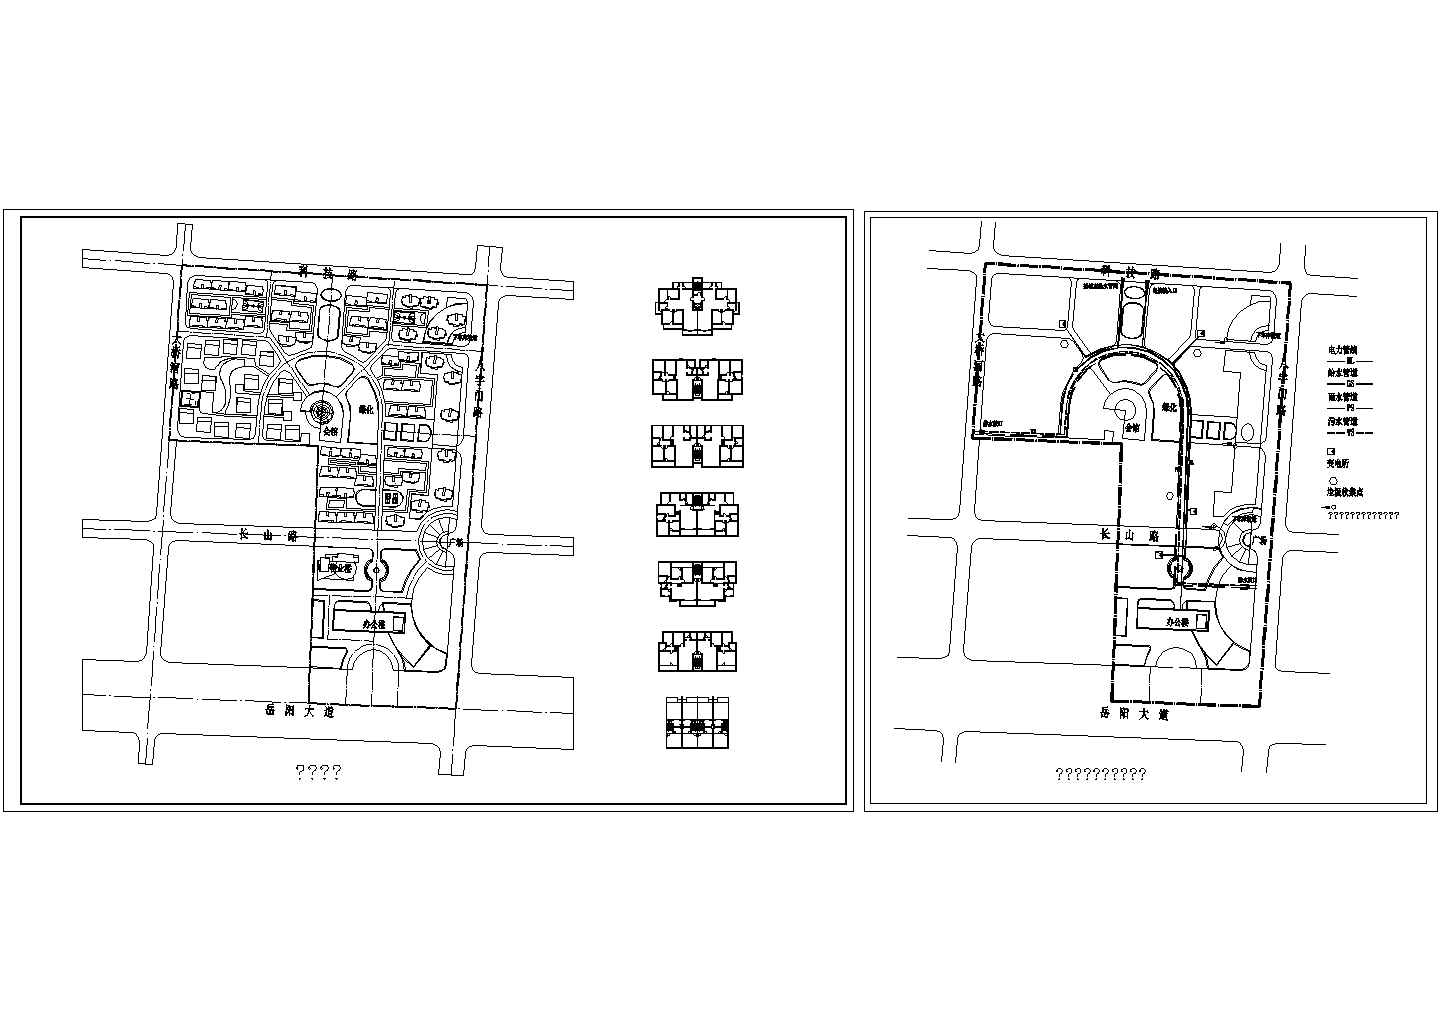 小区规划总平1张 含6种一梯二户建筑平面框架图、公用设施及管线综合图